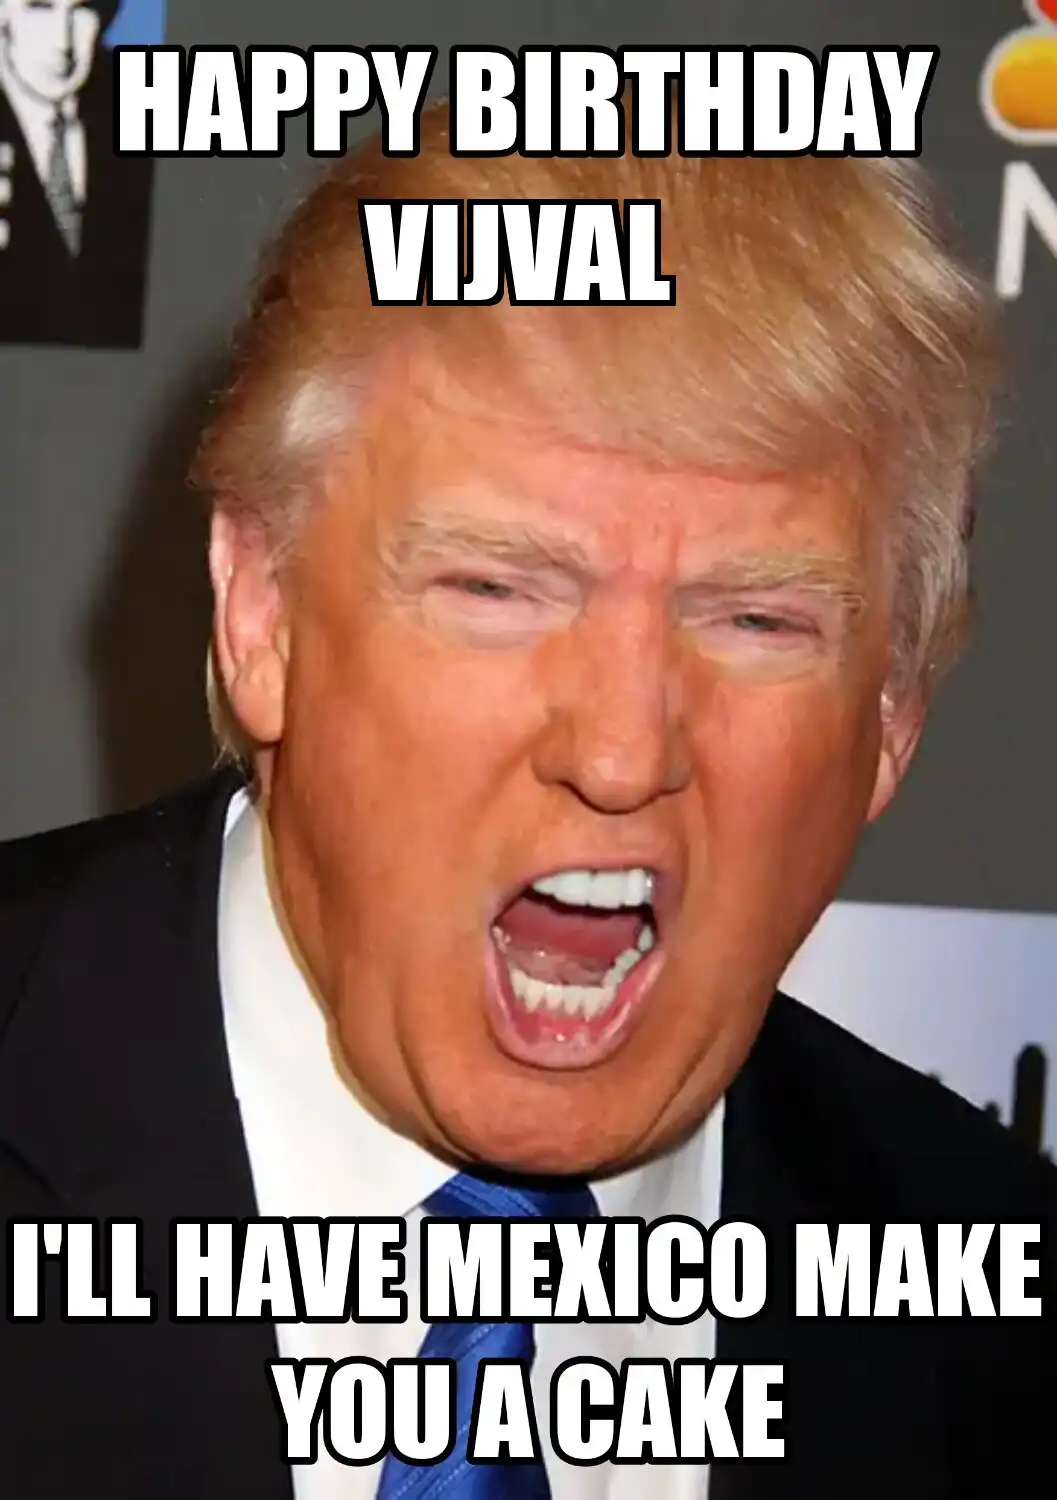 Happy Birthday Vijval Mexico Make You A Cake Meme